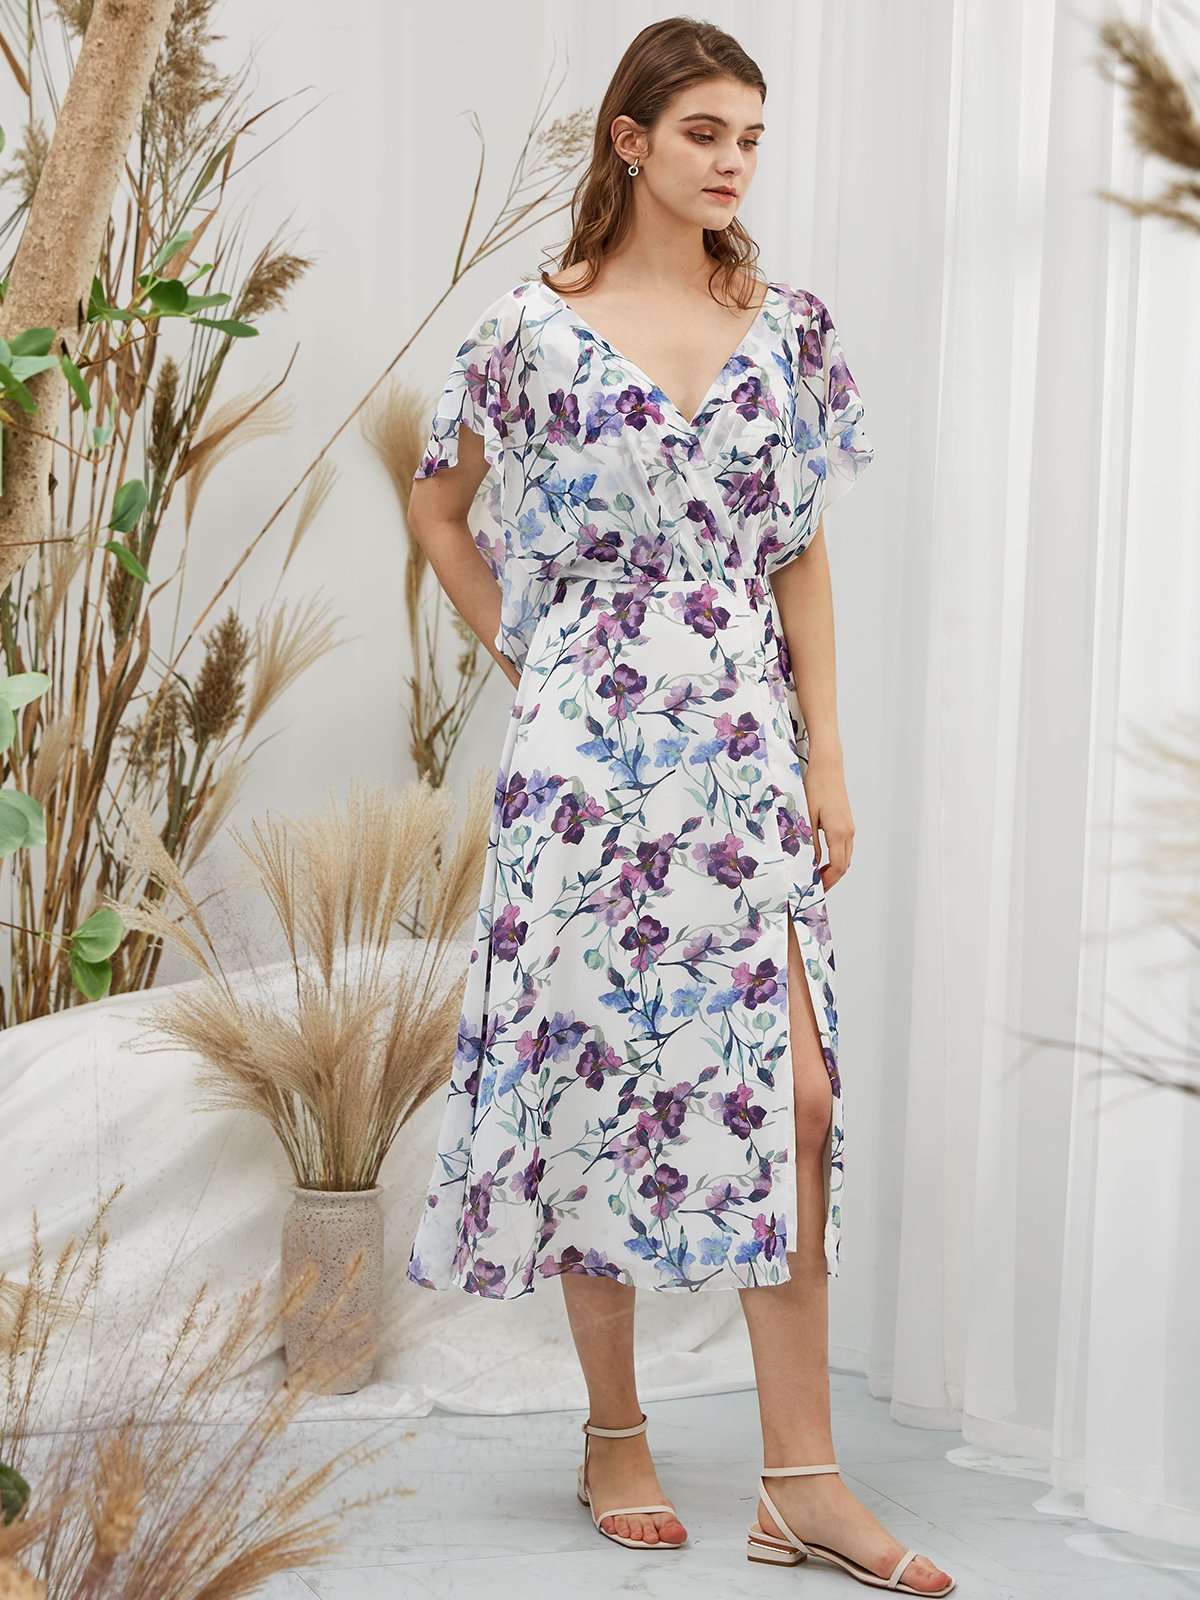 Formales Kleid mit Fledermausärmeln, V-Ausschnitt, Chiffon-Print, Blumenblau, Teelänge